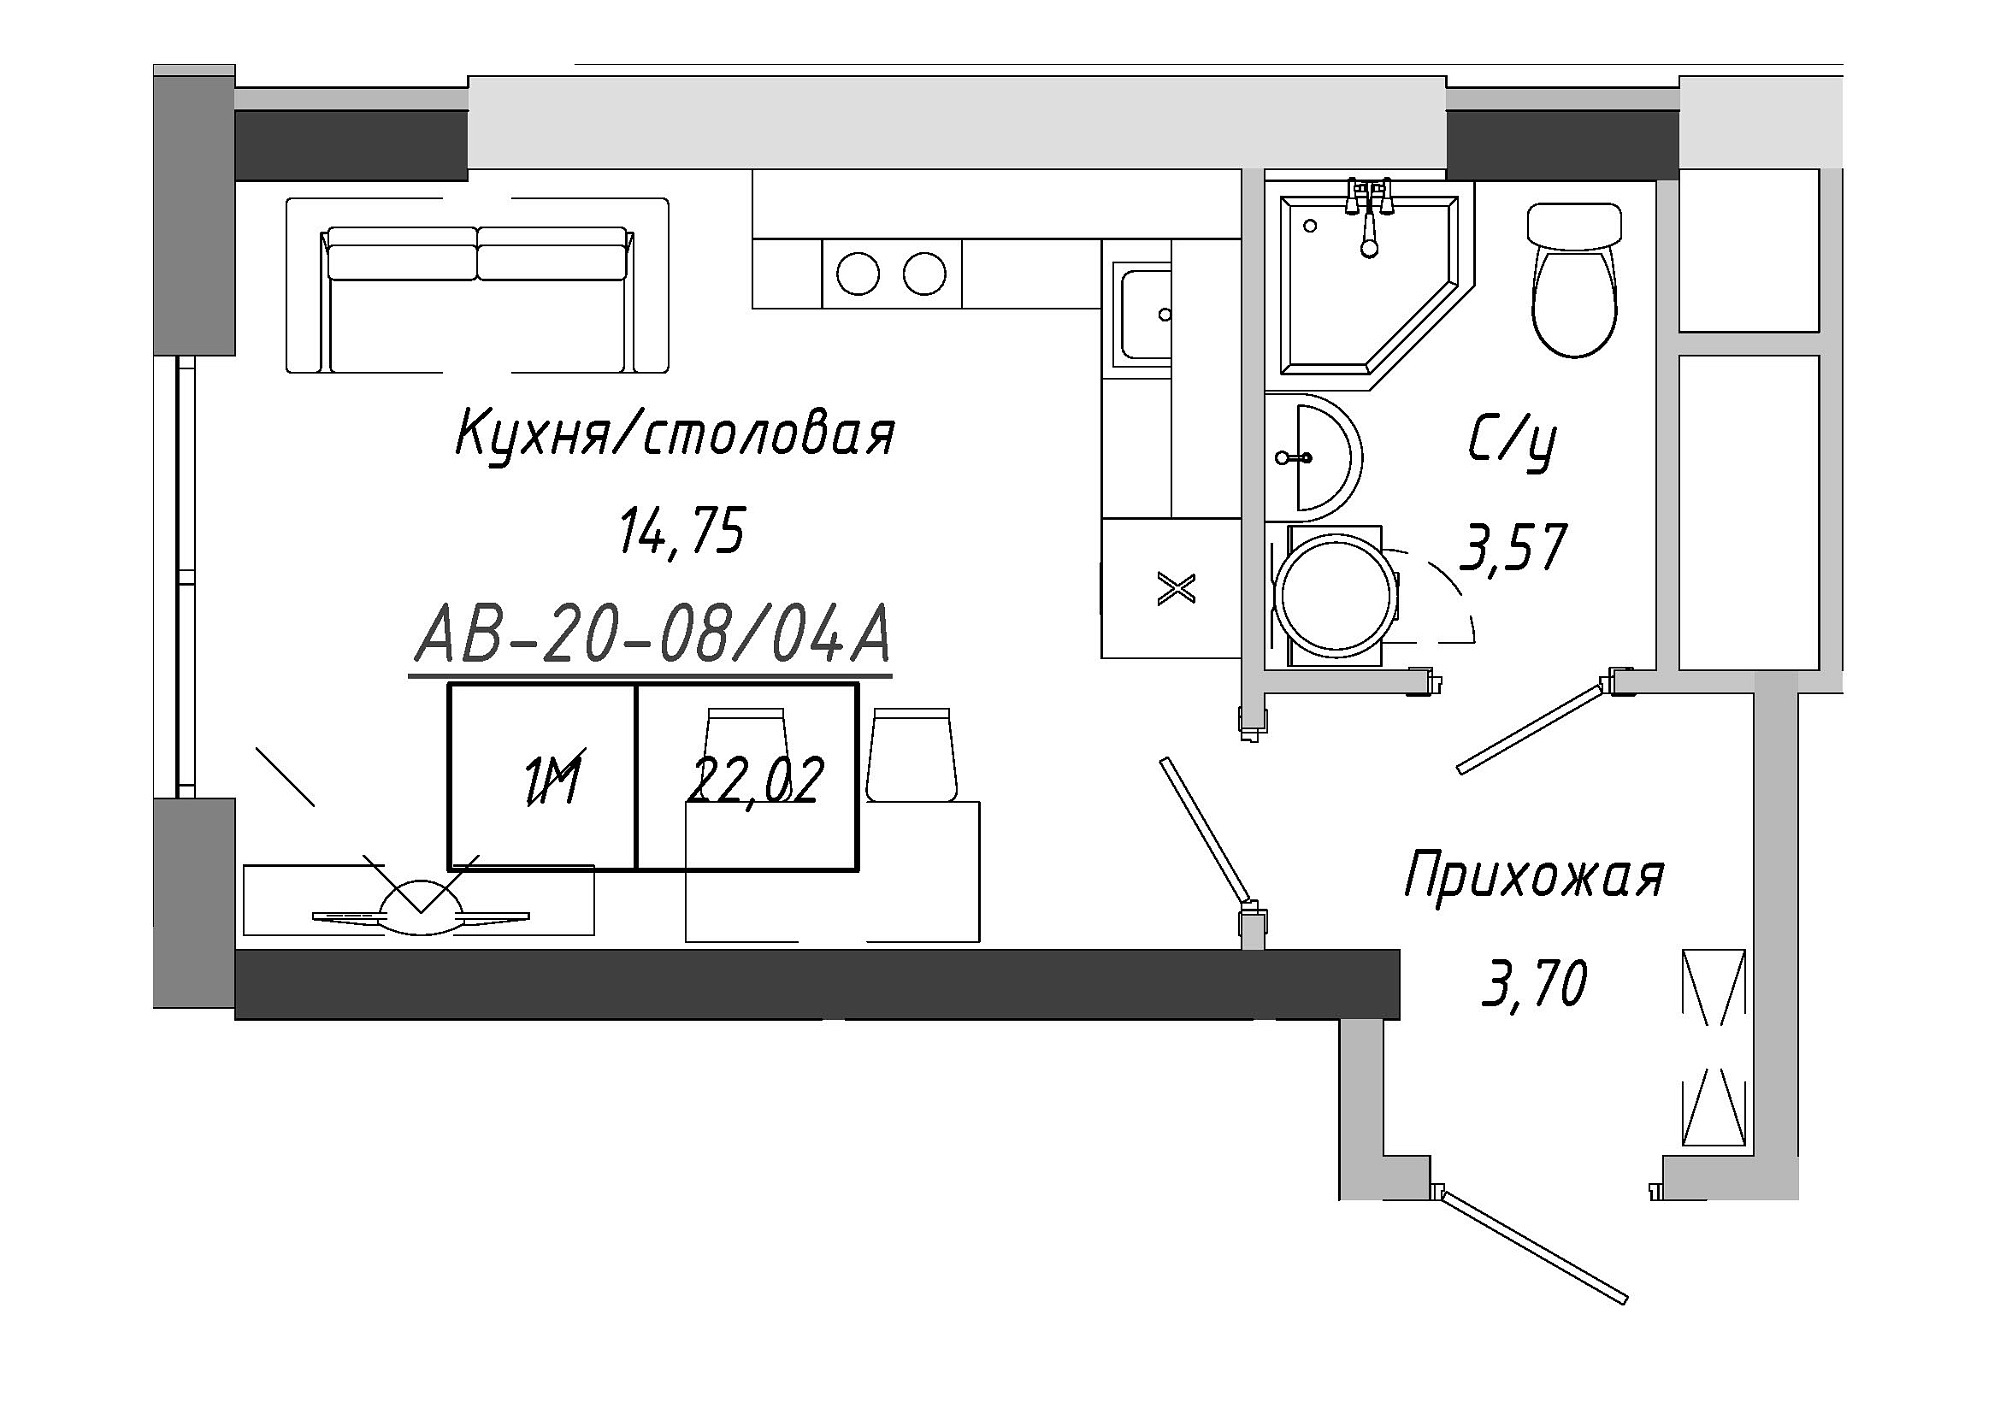 Планировка Smart-квартира площей 21.3м2, AB-20-08/0004а.